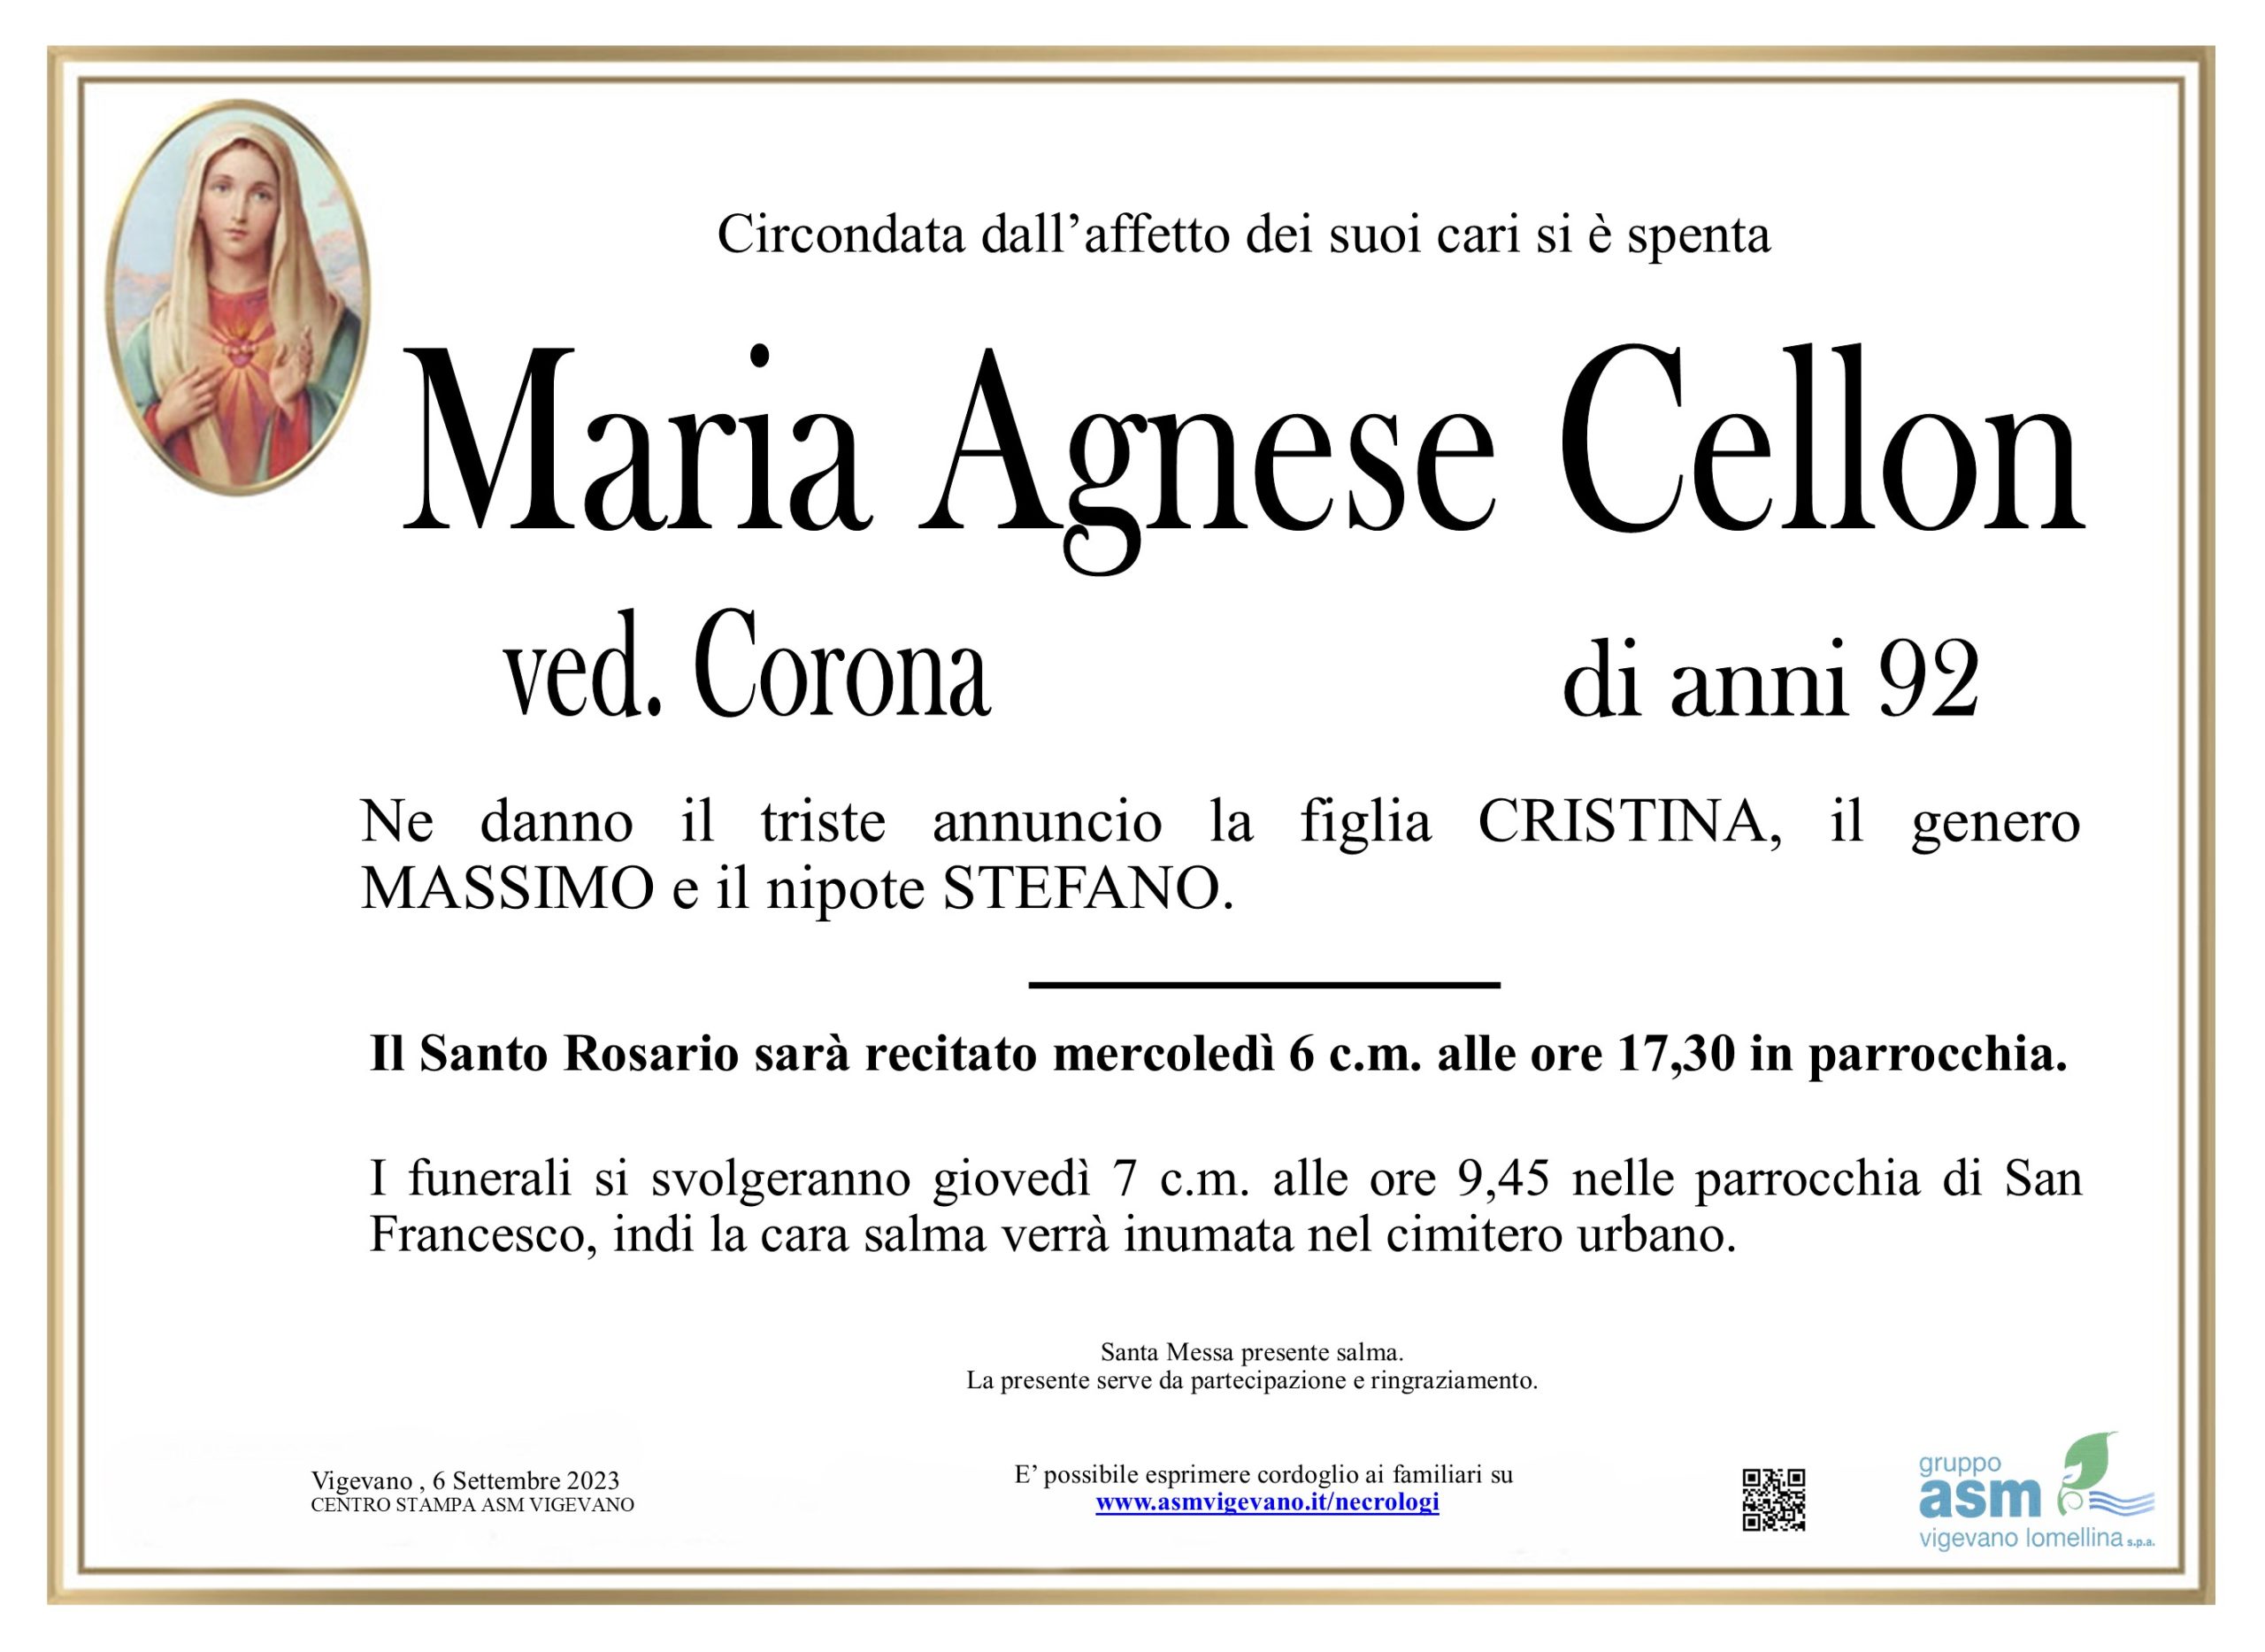 Maria Agnese Cellon